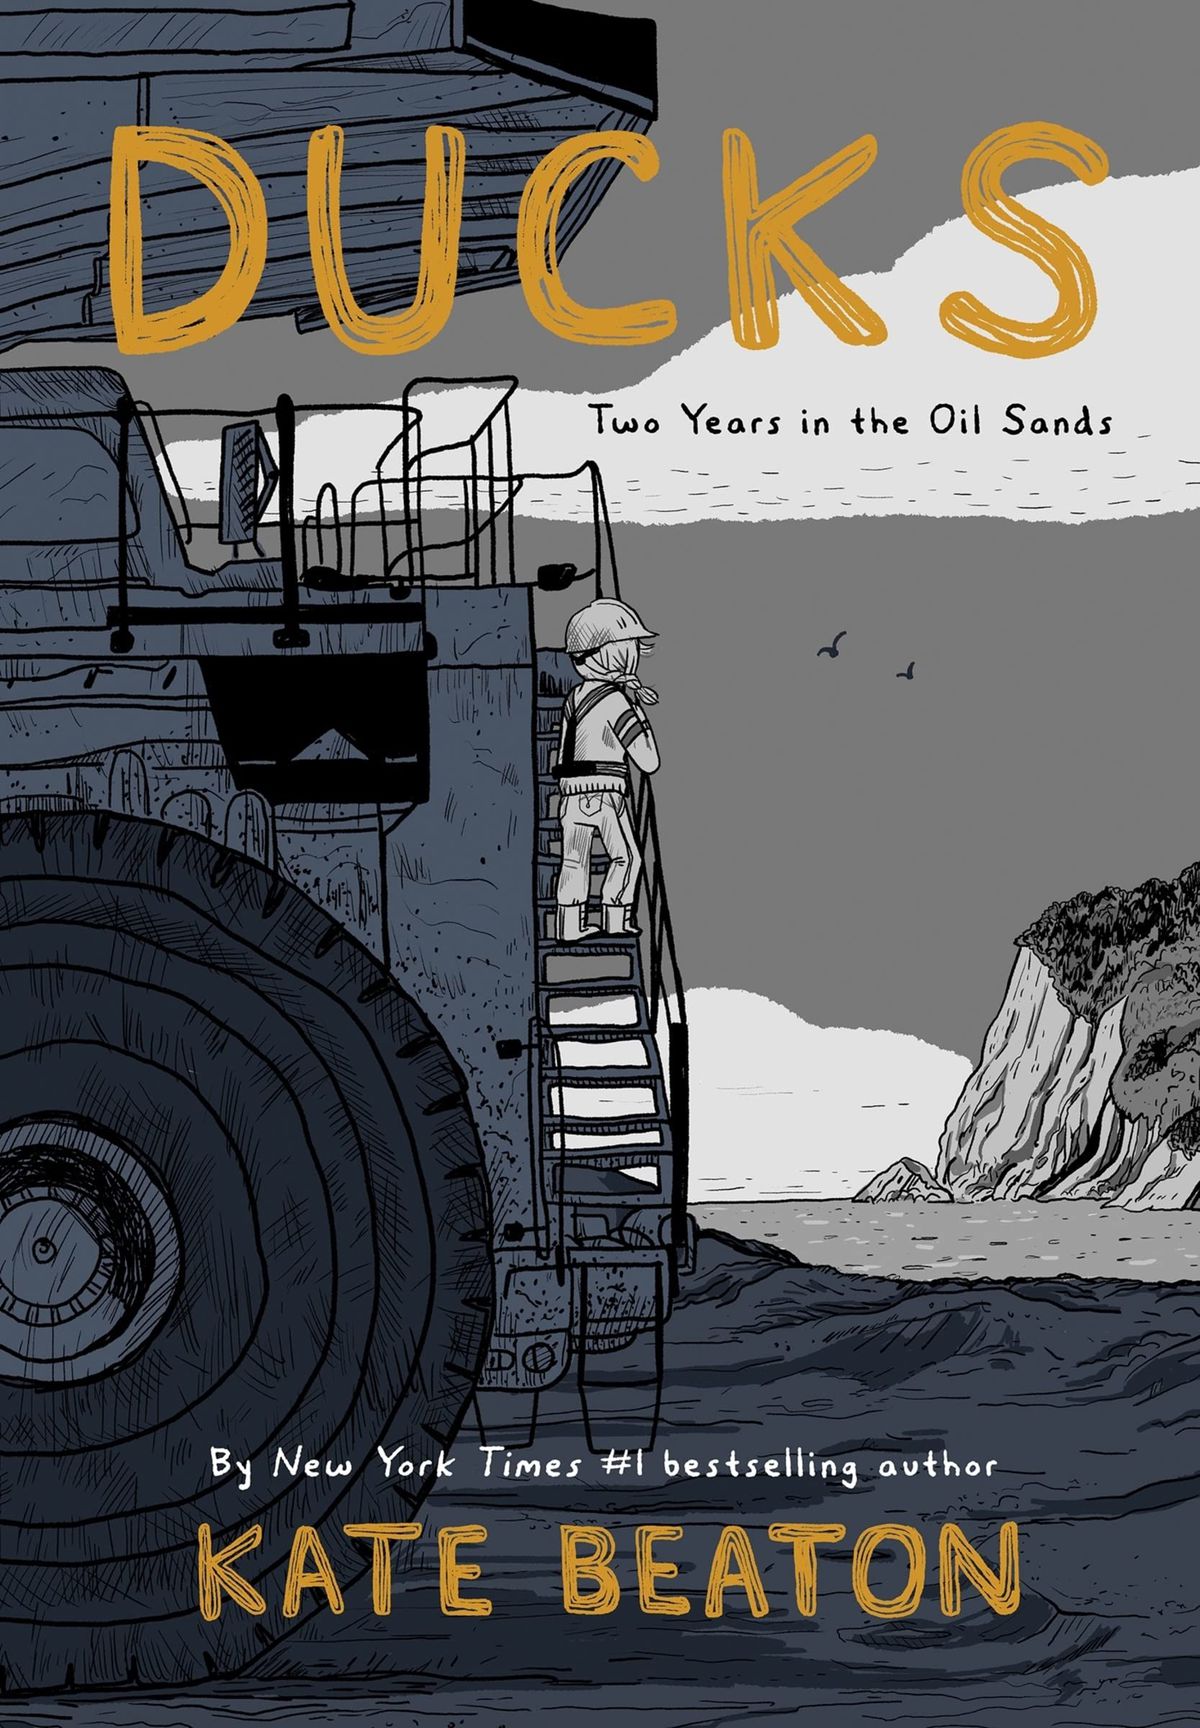 Una giovane ragazza è in piedi su una piattaforma petrolifera a guardare il lato di una scogliera nella copertina di Ducks: Two Years in the Oil Sands di Kate Beaton